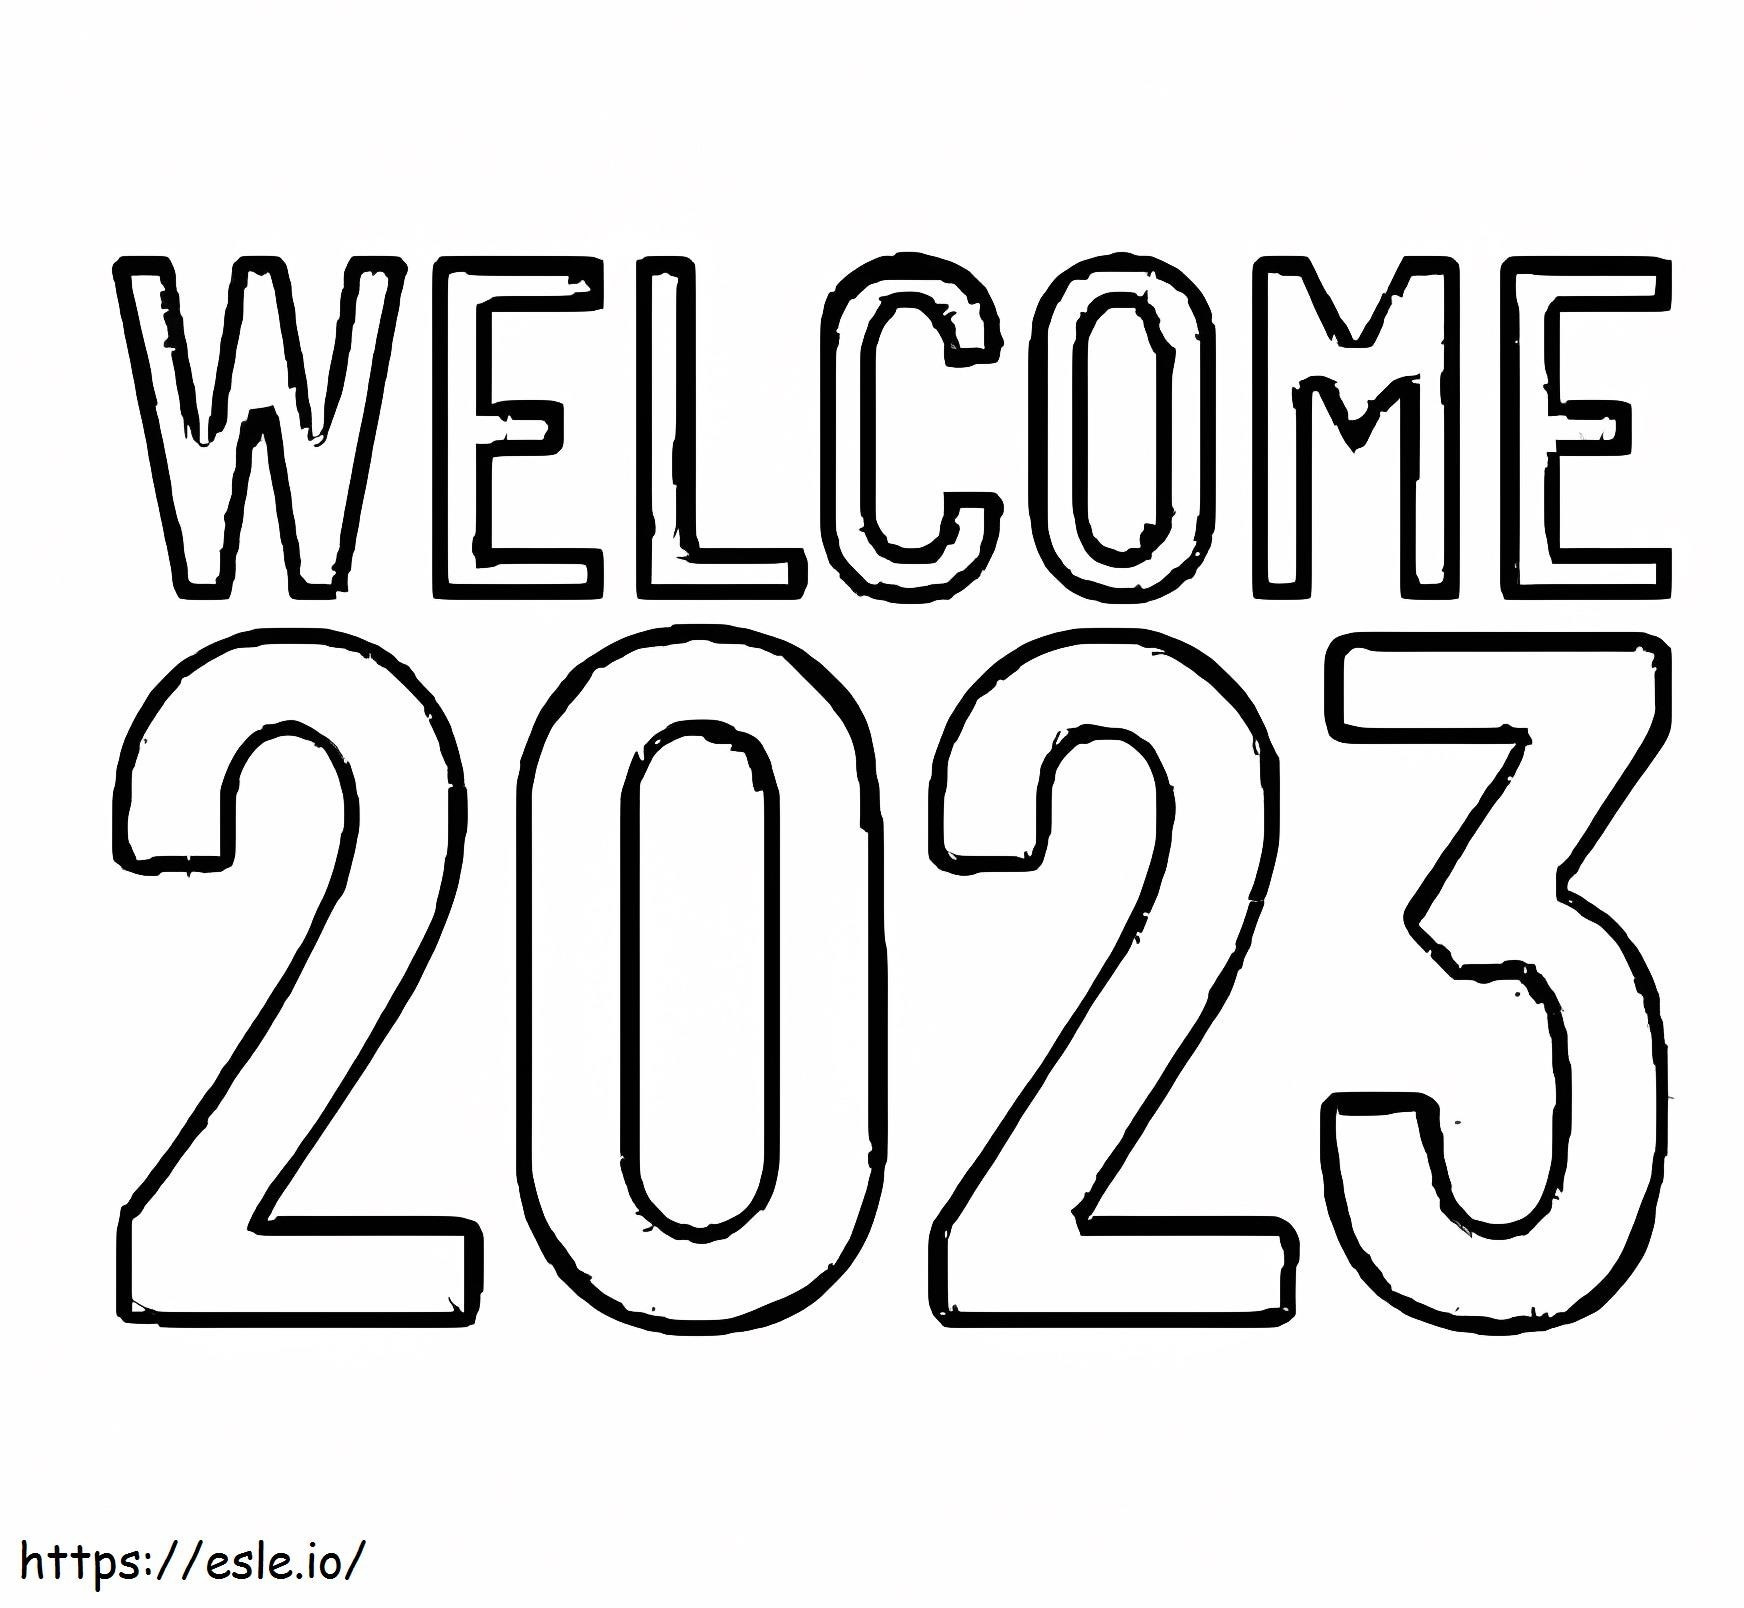 Hoş geldin 2023 boyama